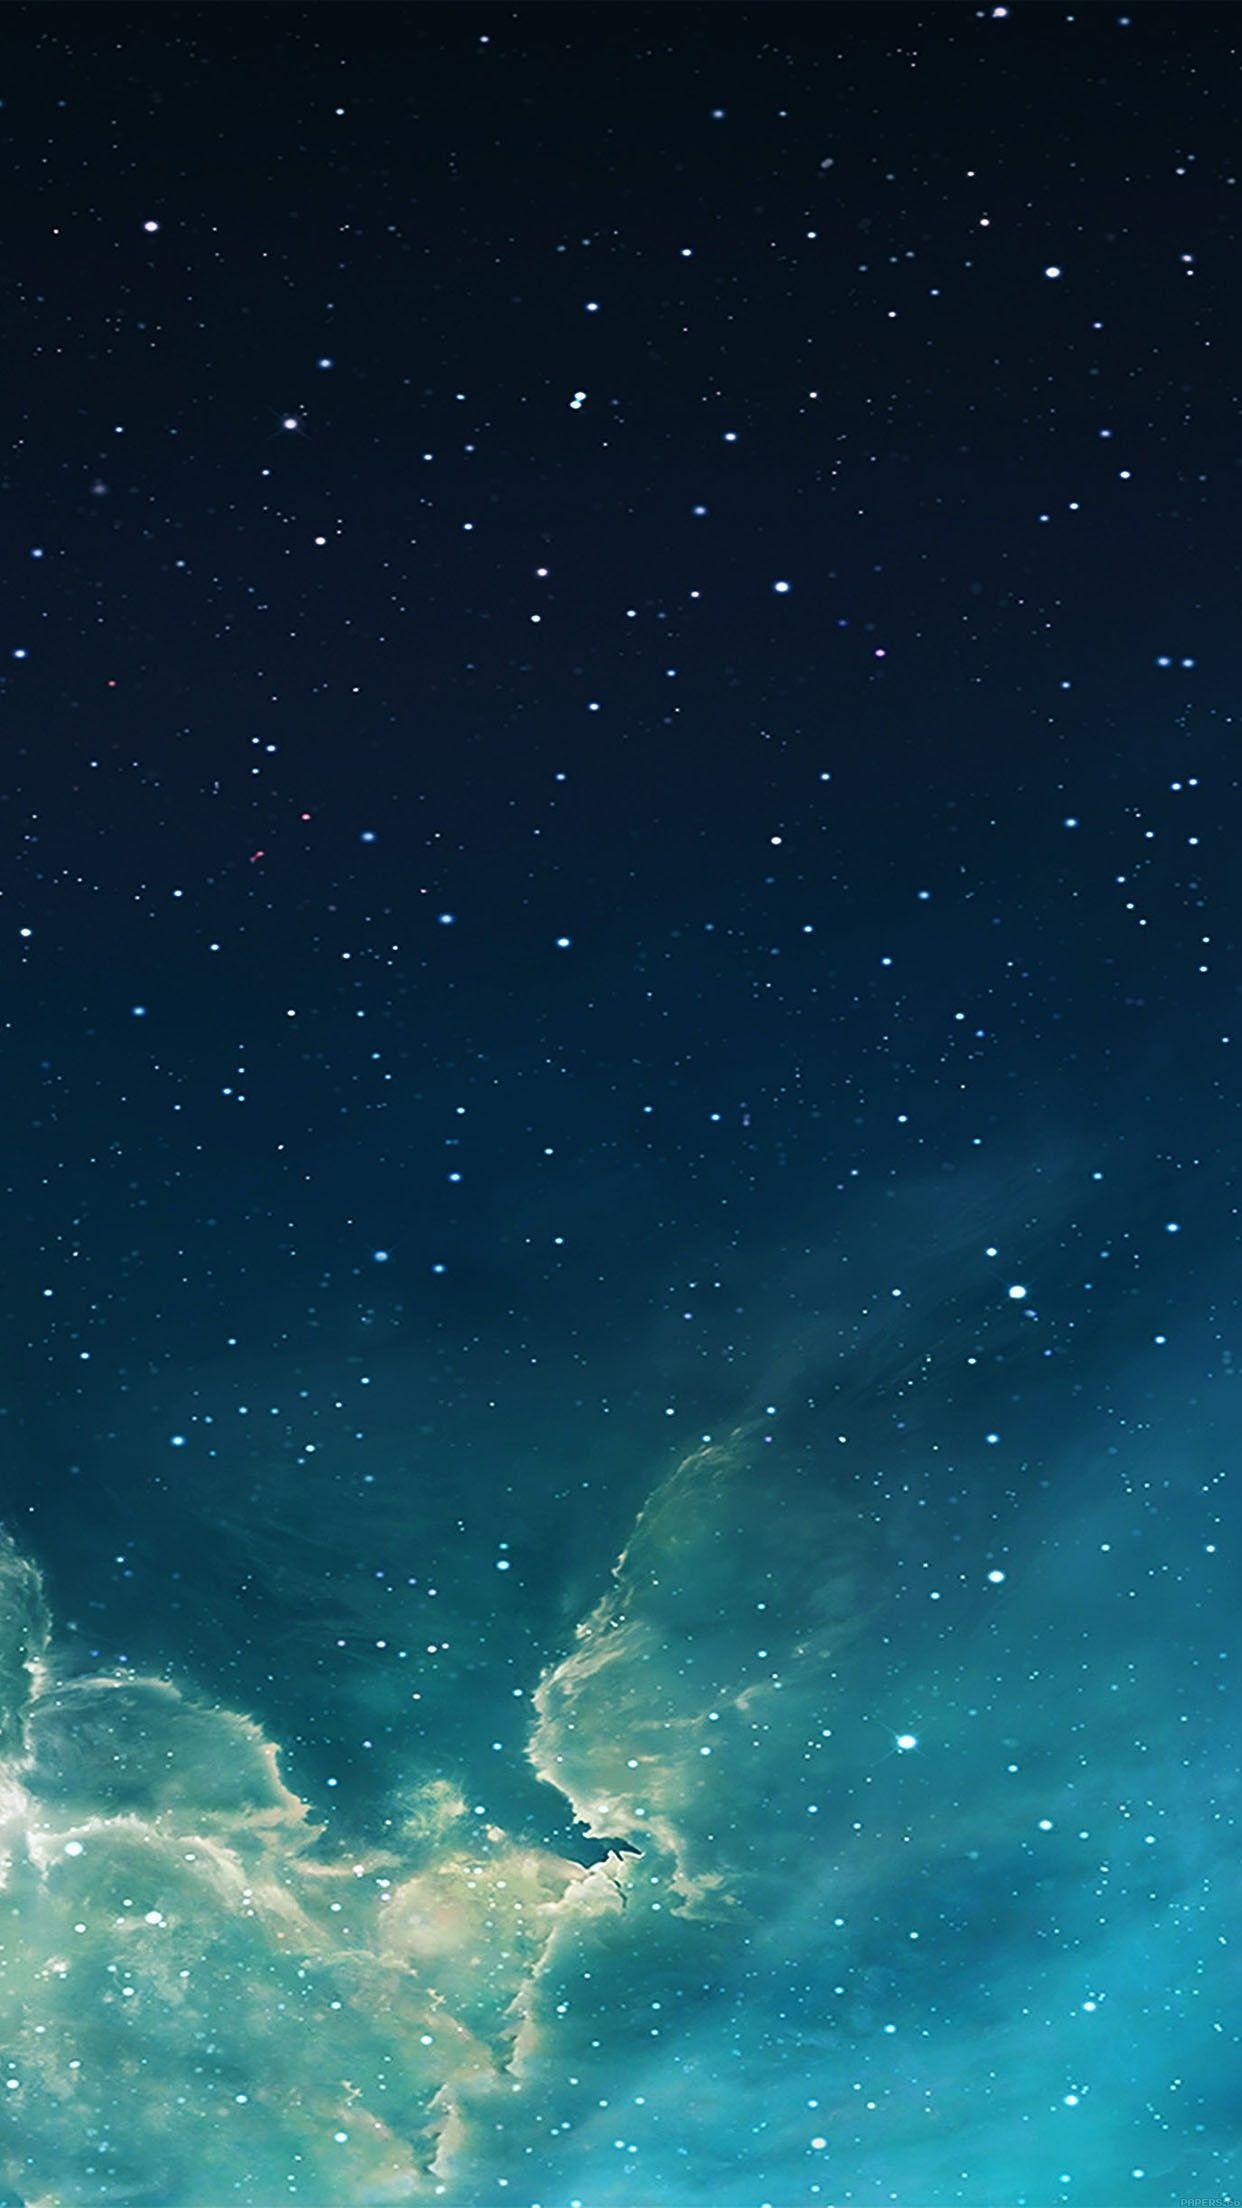 Hình nền 1242x2208 galaxy blue 7 star star sky Hình nền iphone 6 plus - hàng ngày tốt nhất.  Hình nền thiên hà xanh, Hình nền bầu trời đêm, Hình nền iPhone 6 plus